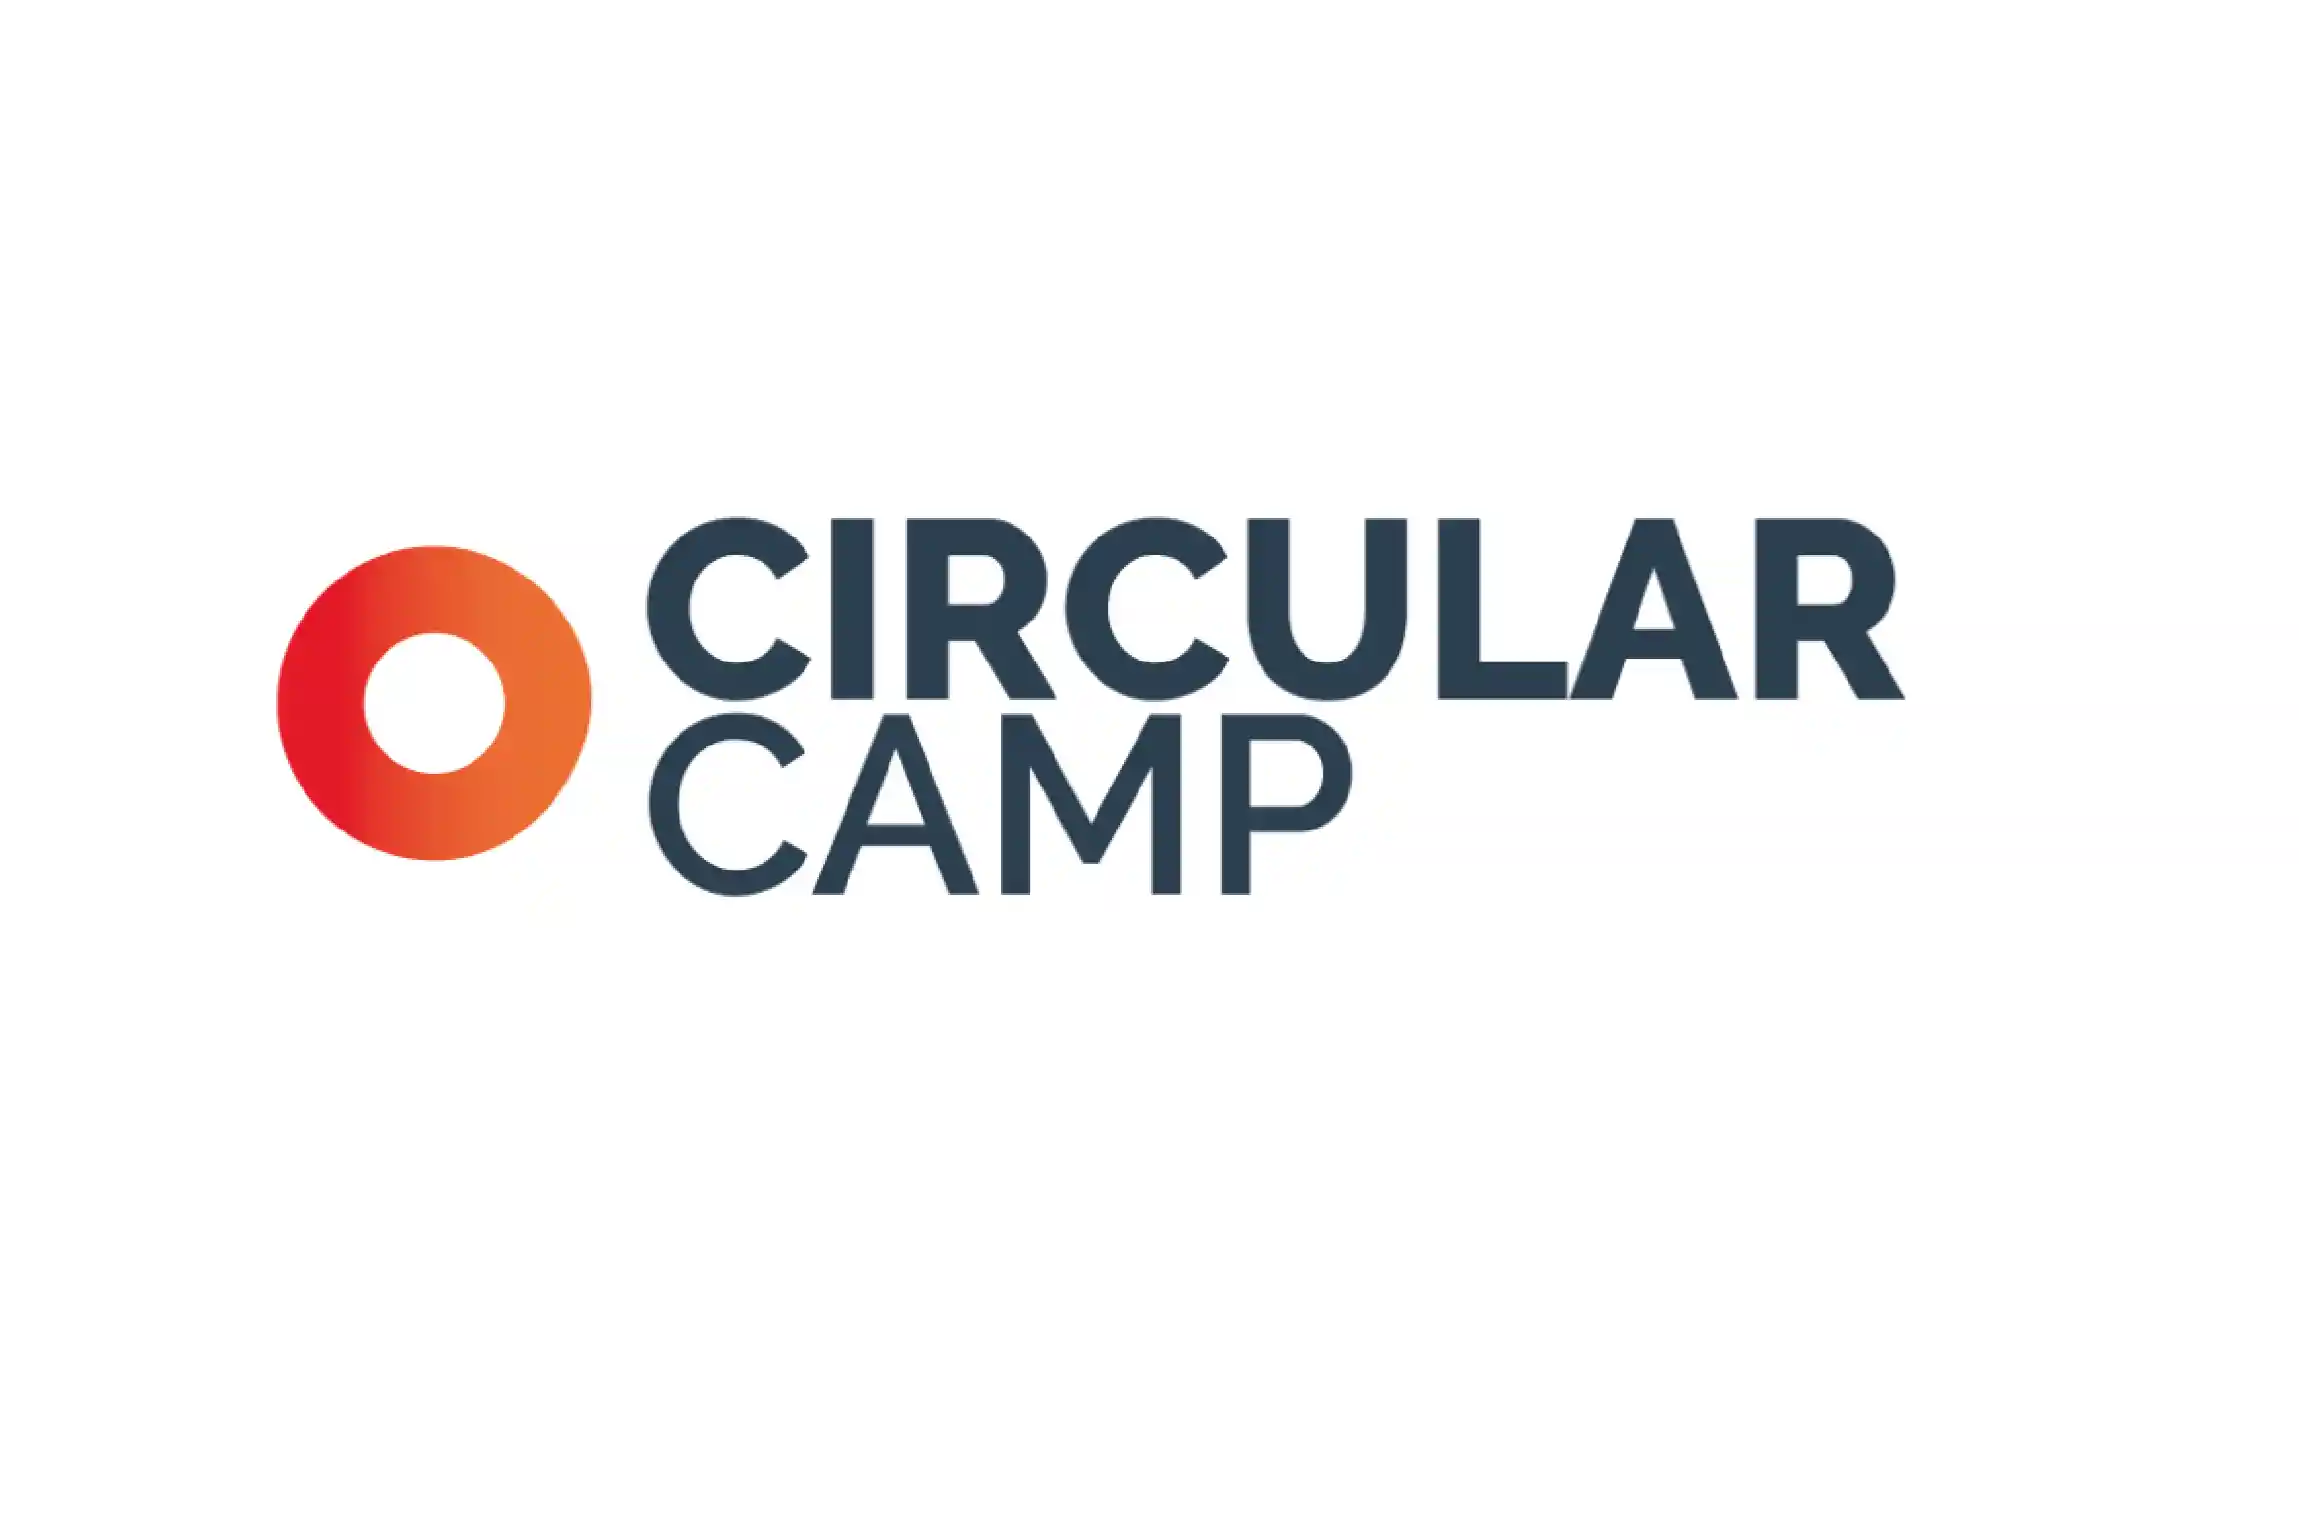 Circular Camp